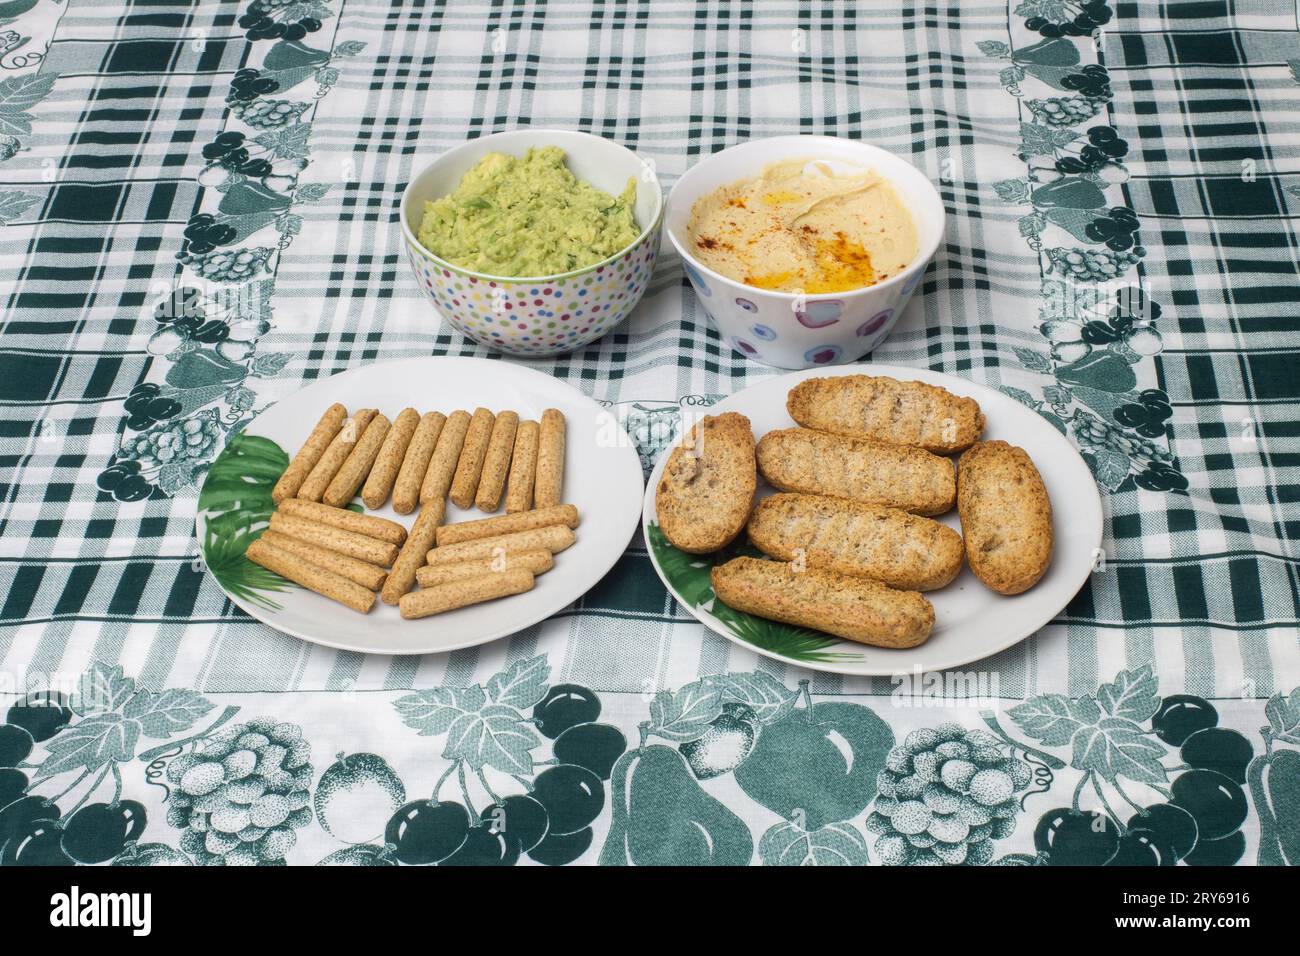 Due piccole ciotole di Hummus e guacamole fatti in casa accompagnate da piatti con pane tostato integrale e bastoncini di pane tostato su un elegante panno Tablecloth Ador Foto Stock